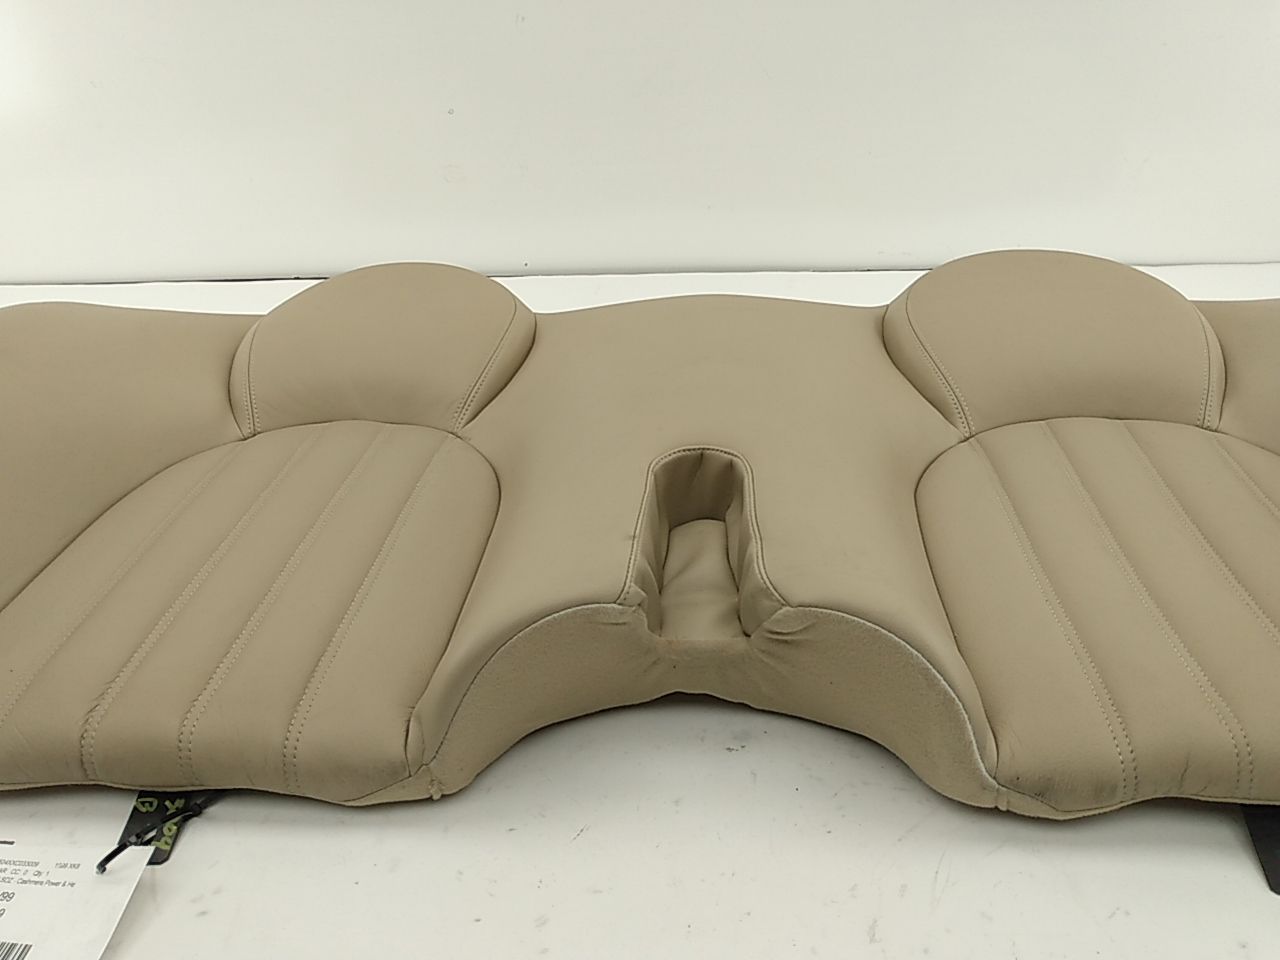 Jaguar XK8 Rear Seat Backrest